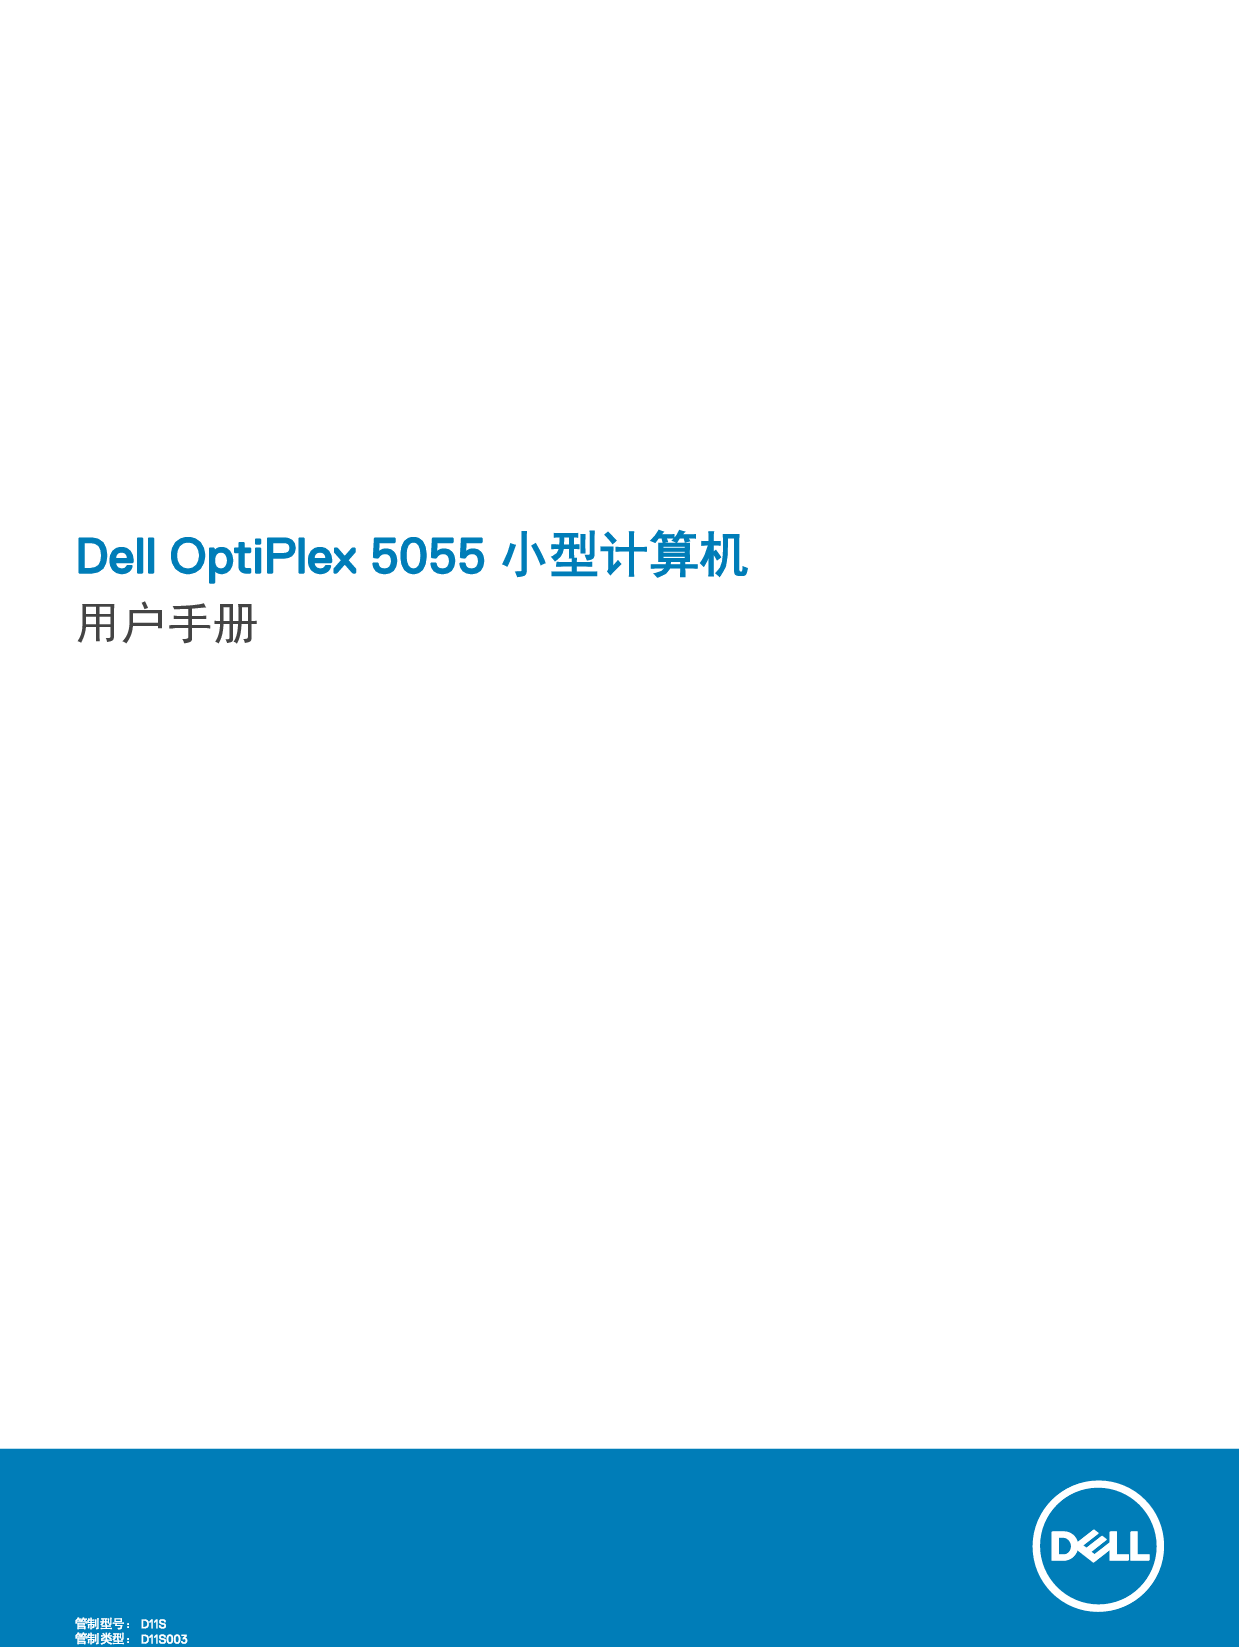 戴尔 Dell Optiplex 5055 RYZEN CPU 小型 用户手册 封面